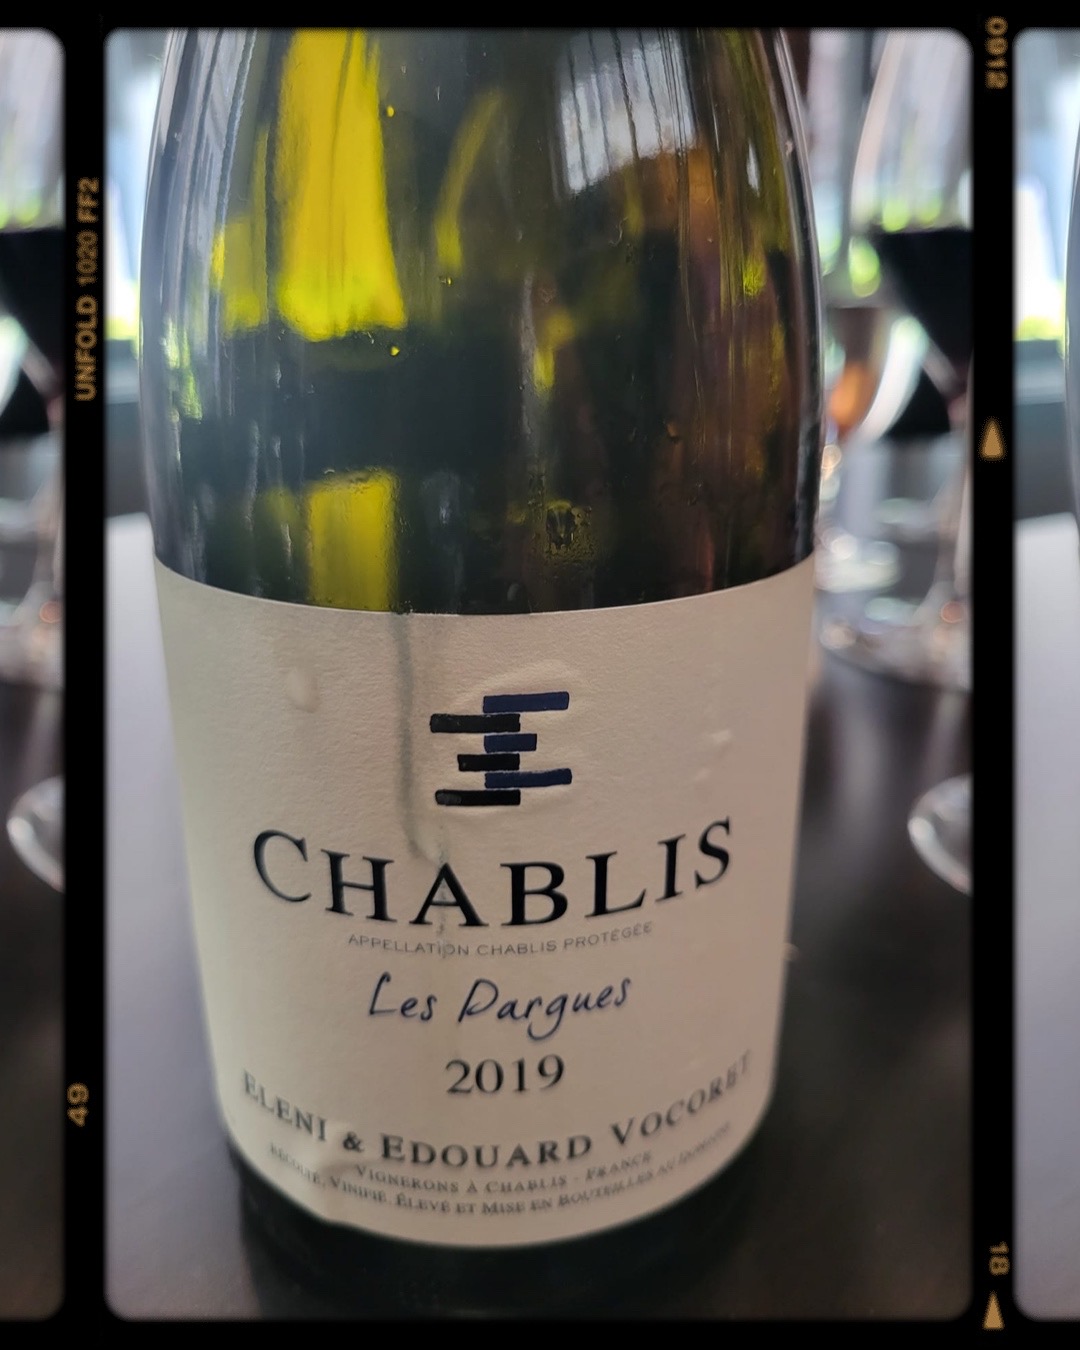 Wine Review: 2019 Domaine Eleni et Edouard Vocoret Chablis “Les Pargues”